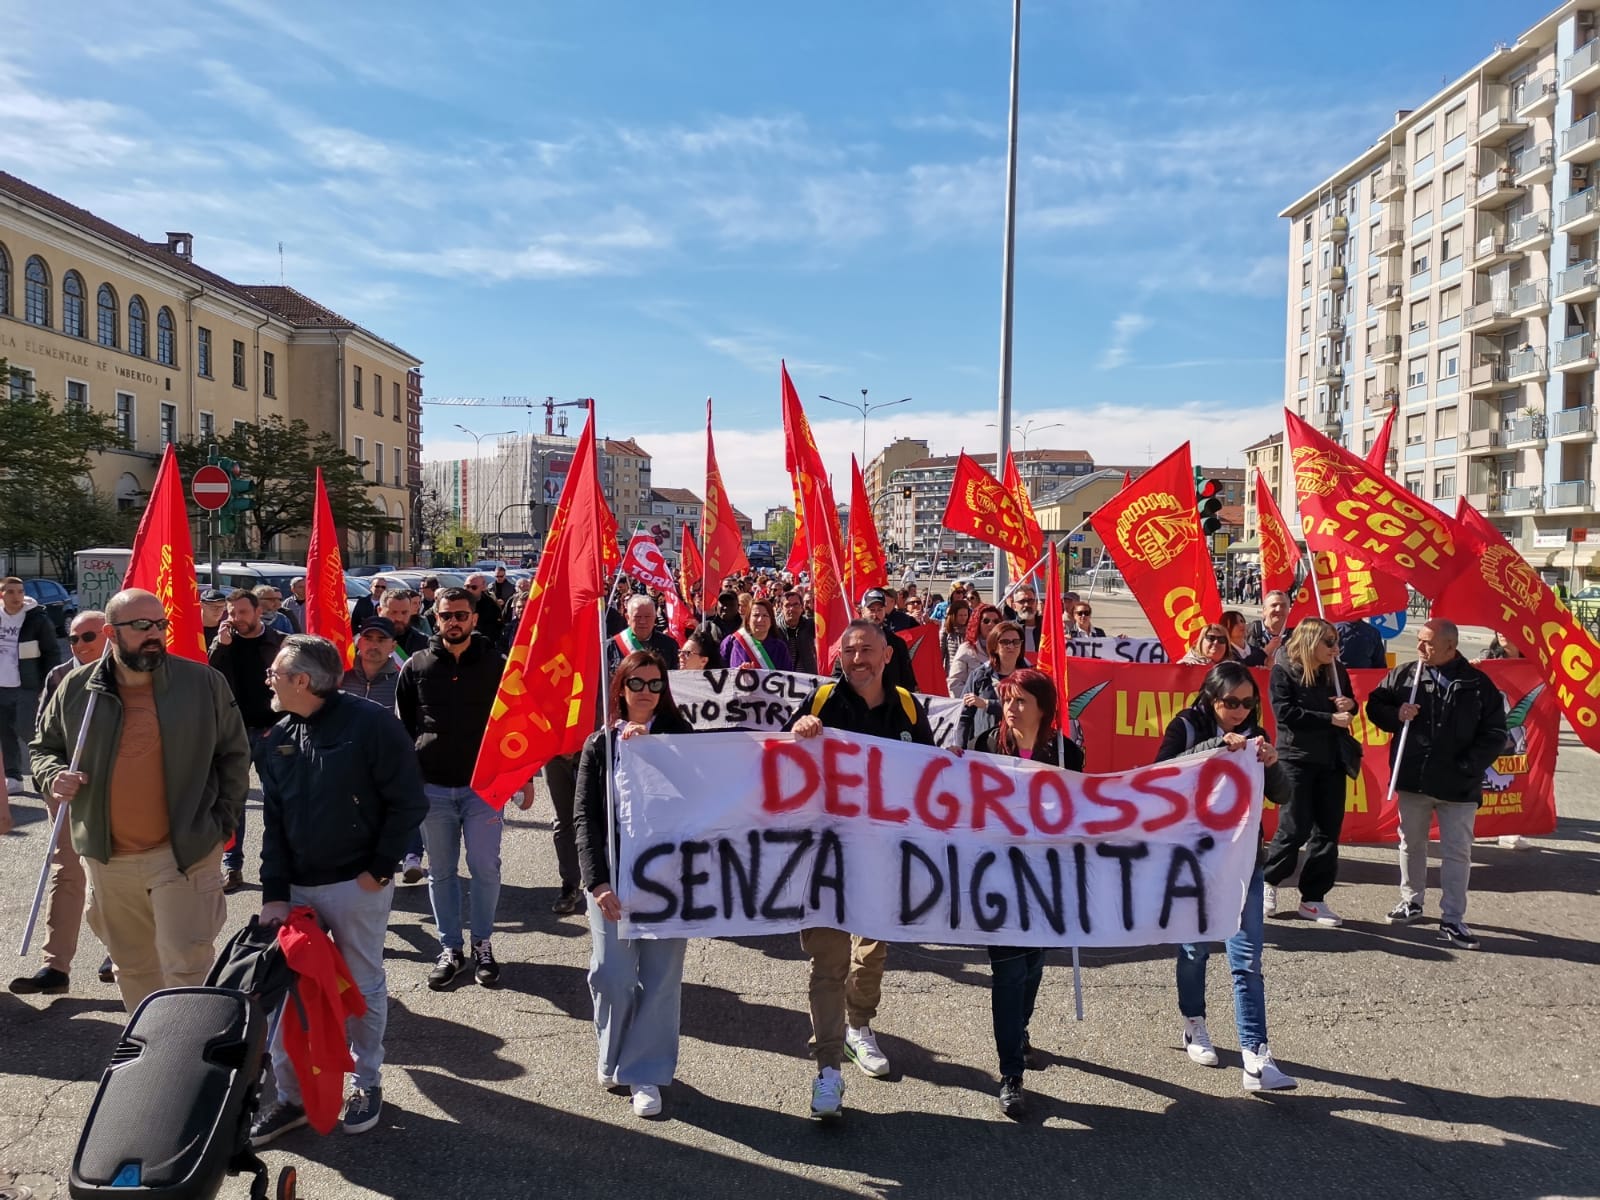 MONCALIERI – Il Comune elargisce un contributo di 700 euro per i lavoratori Delgrosso residenti